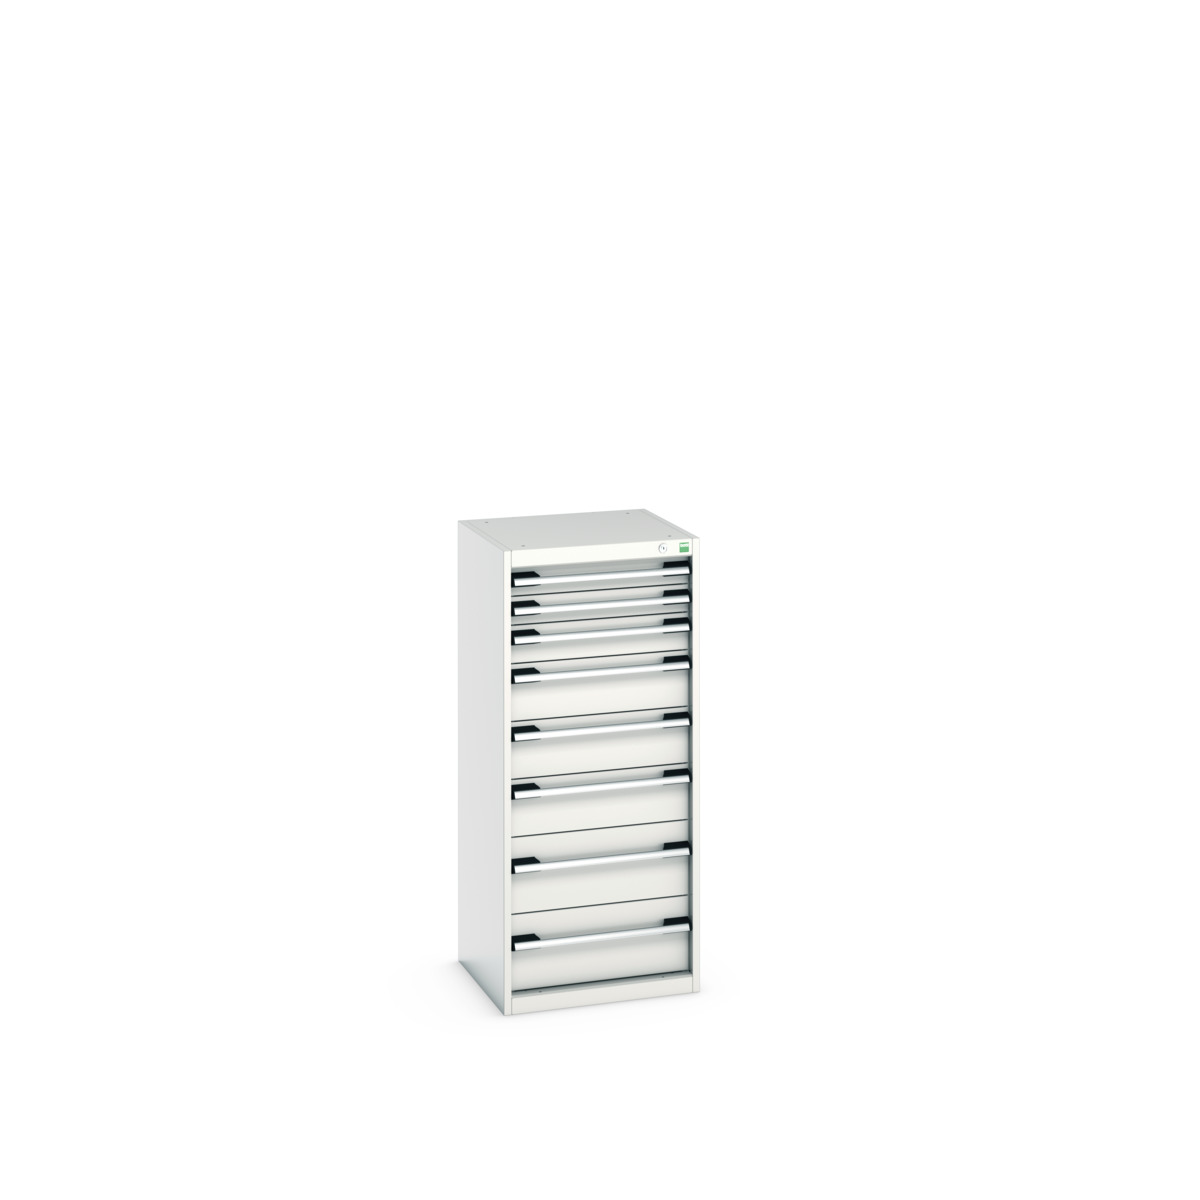 40010121.16V - cubio drawer cabinet